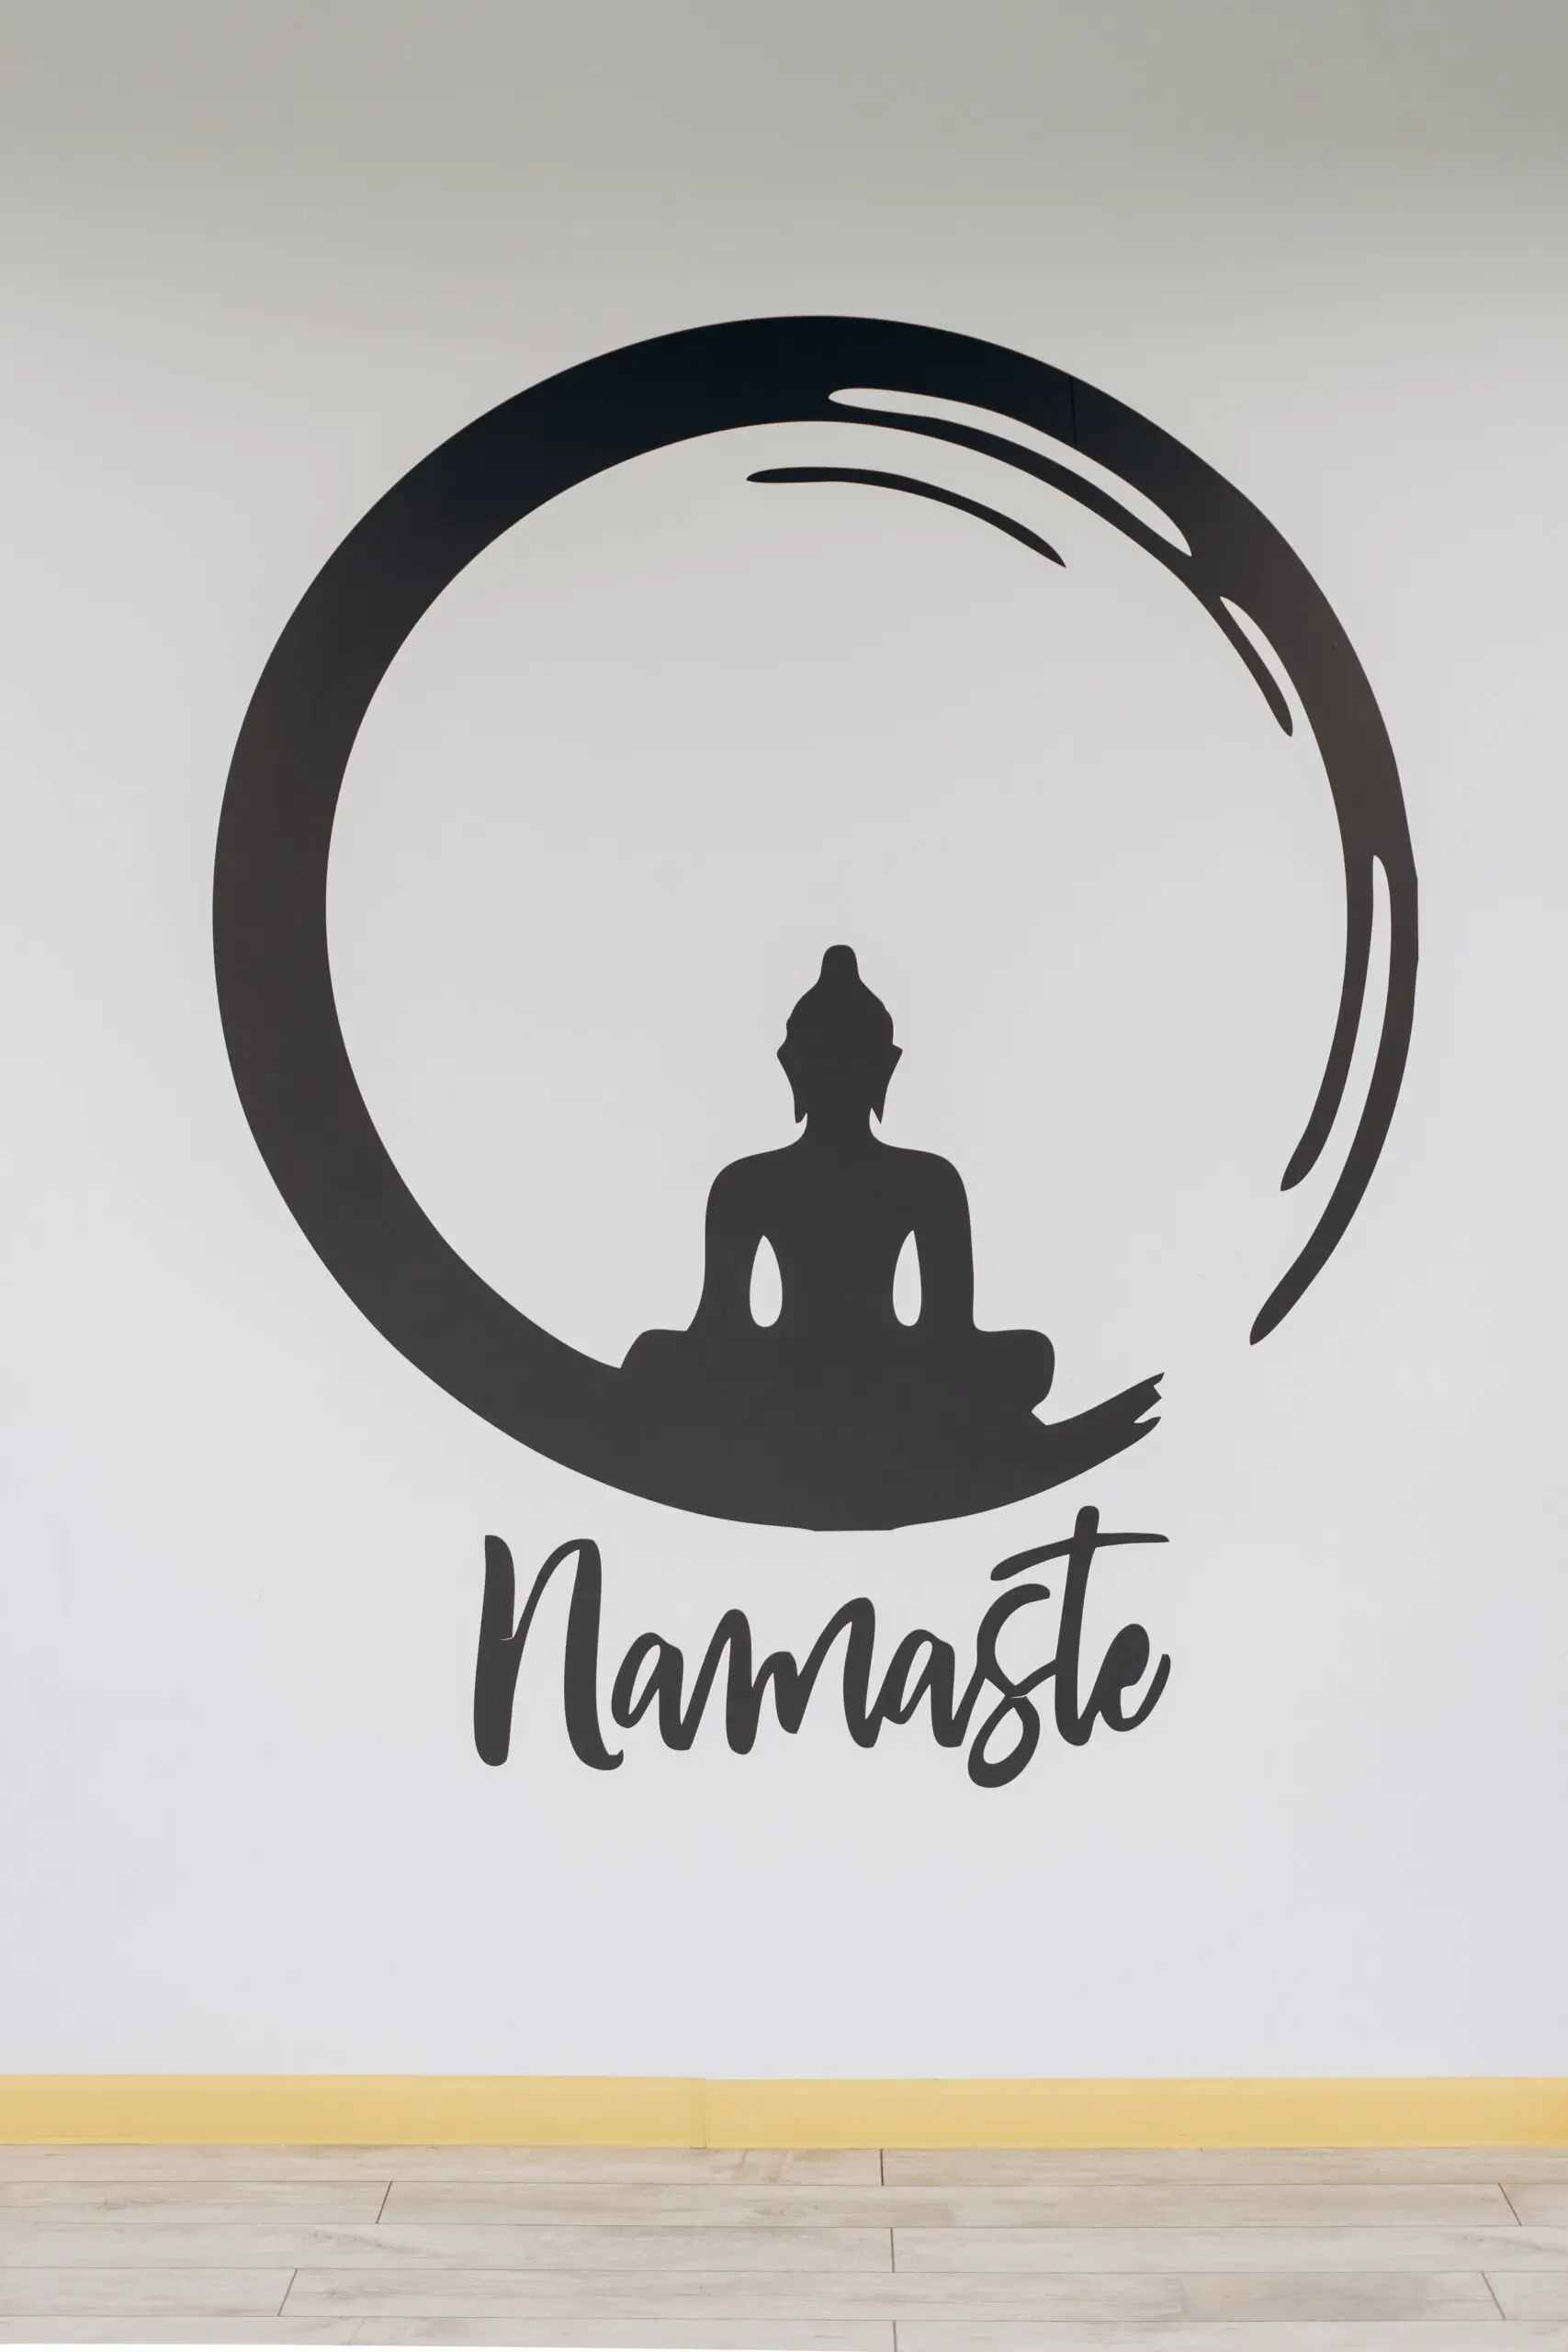 Namaste sign on wall